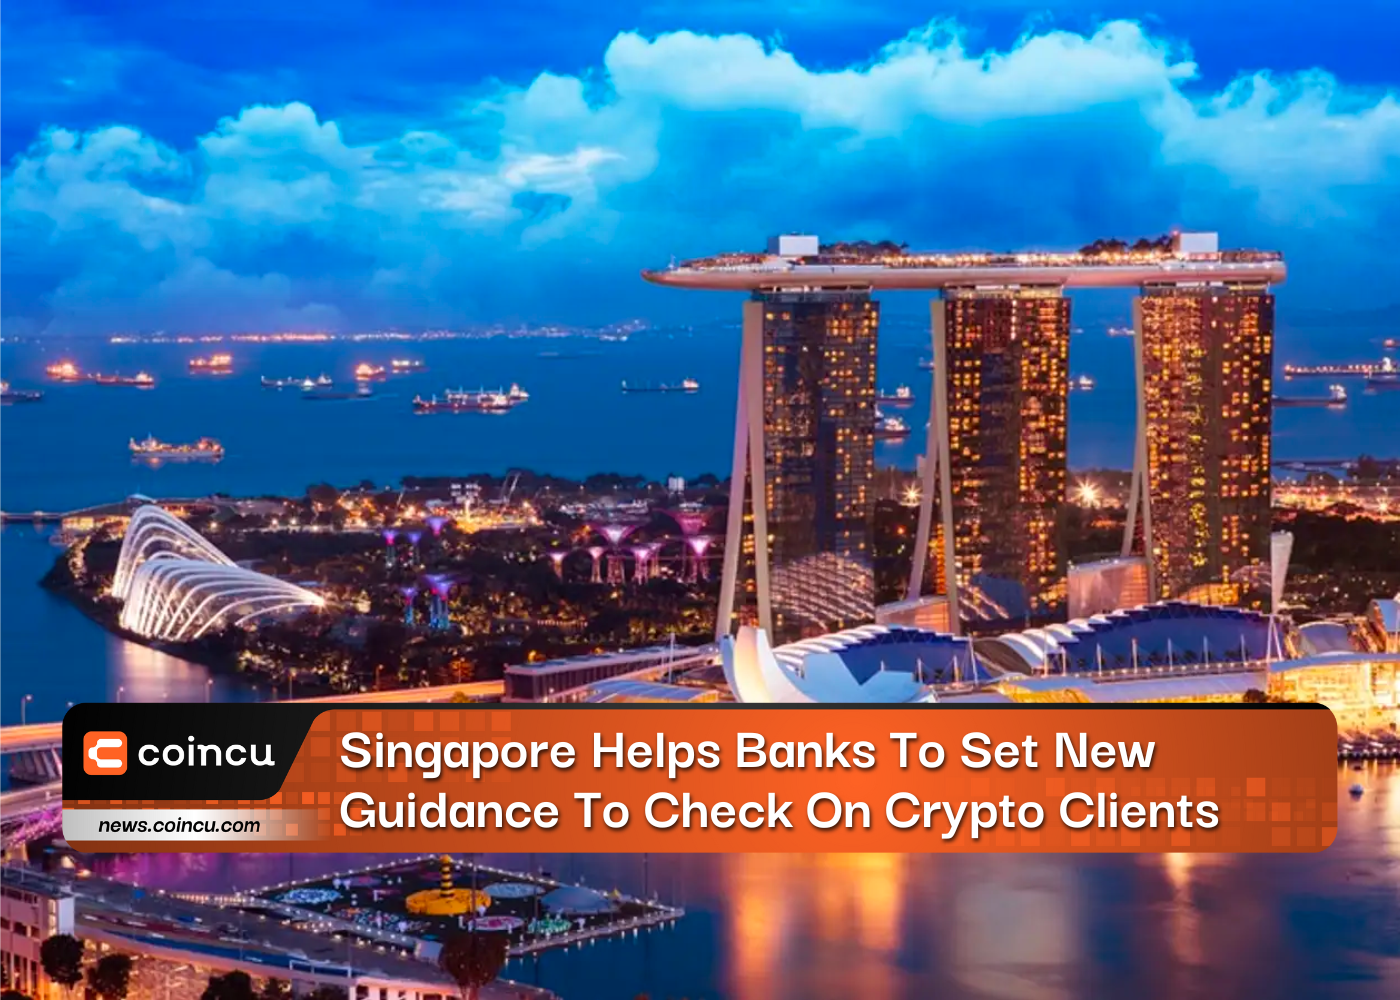 Cingapura ajuda bancos a definir novas orientações para verificar clientes criptográficos